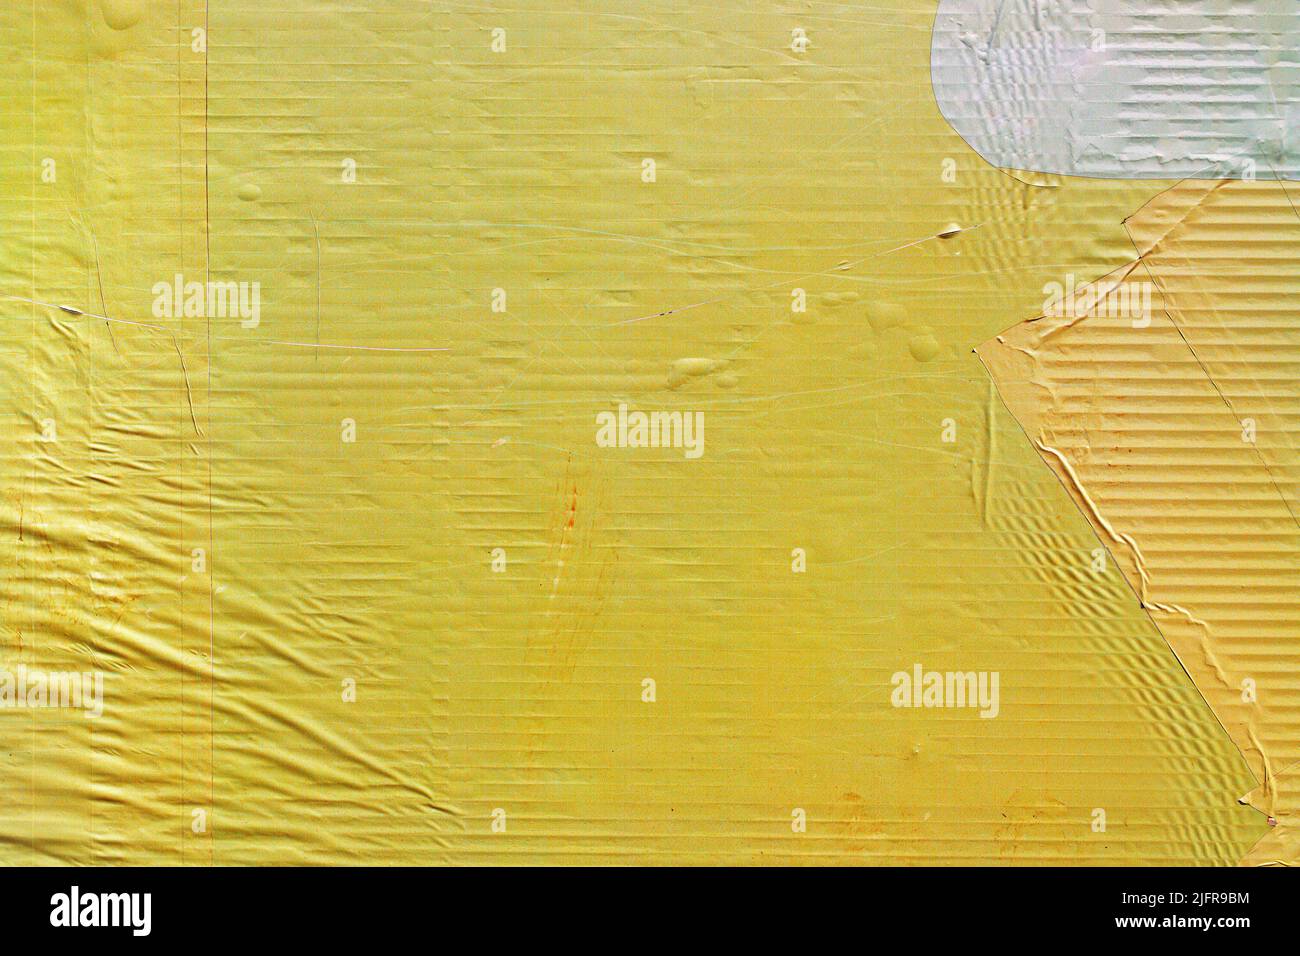 Texture du papier d'affiche publicitaire collé jaune comme fond urbain, usure de la surface de la bannière publicitaire Banque D'Images